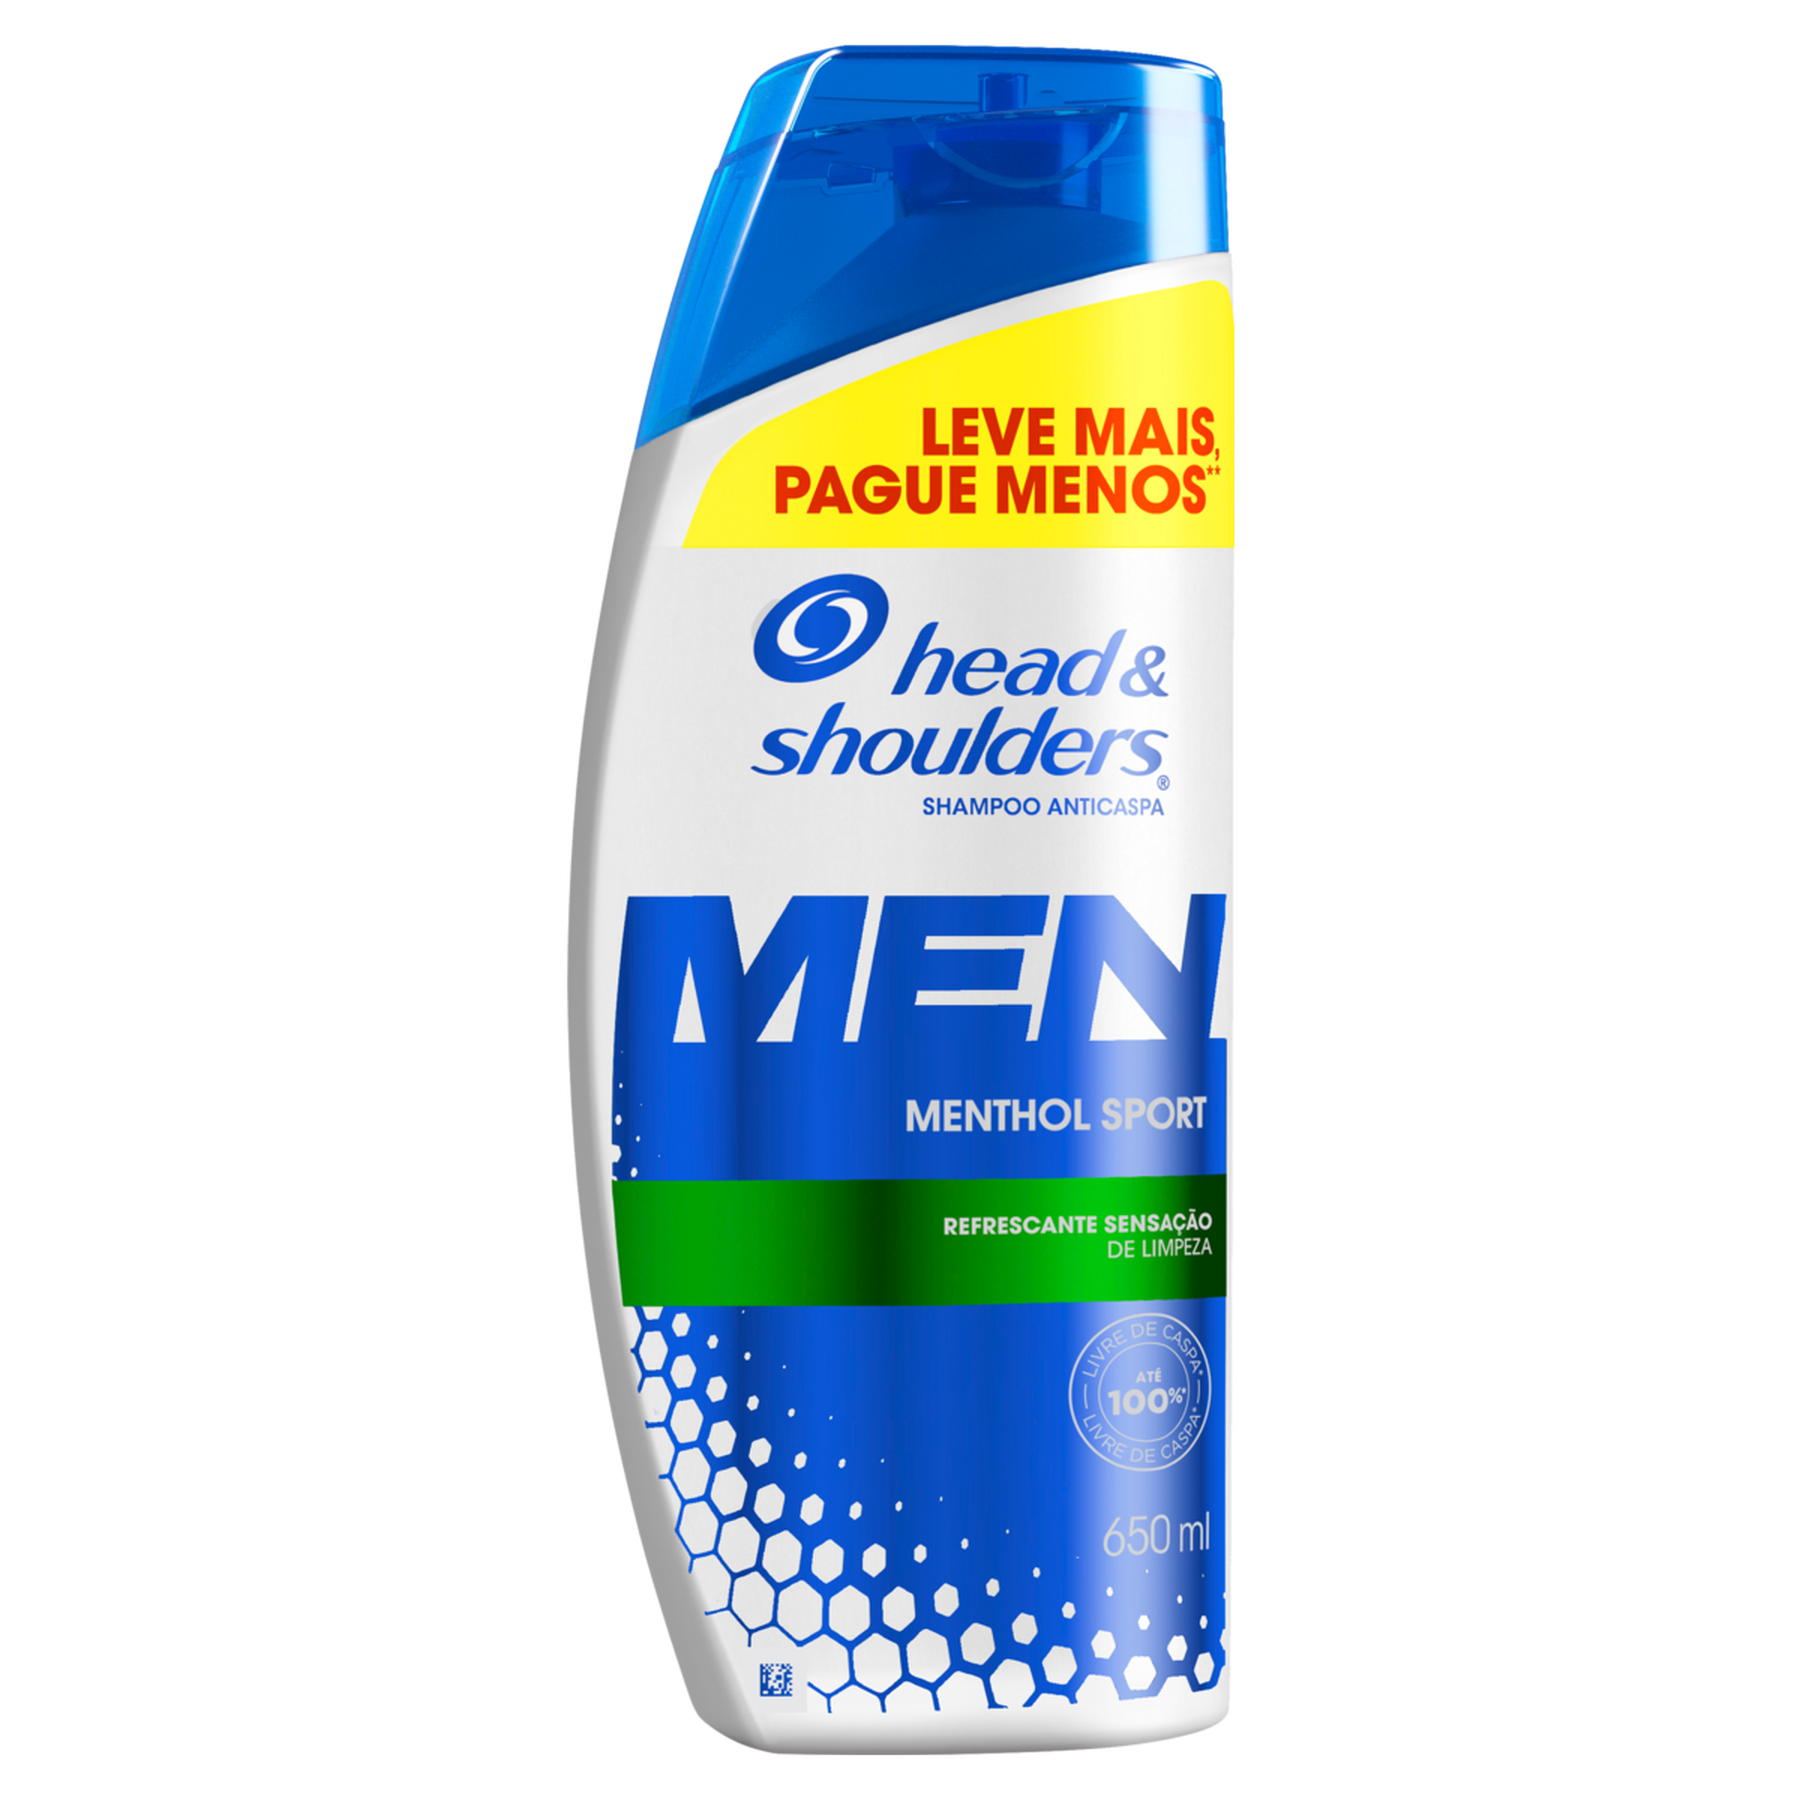 Shampoo Anticaspa Menthol Sport Head e Shoulders Men Frasco 650ml - Embalagem Leve Mais Pague Menos